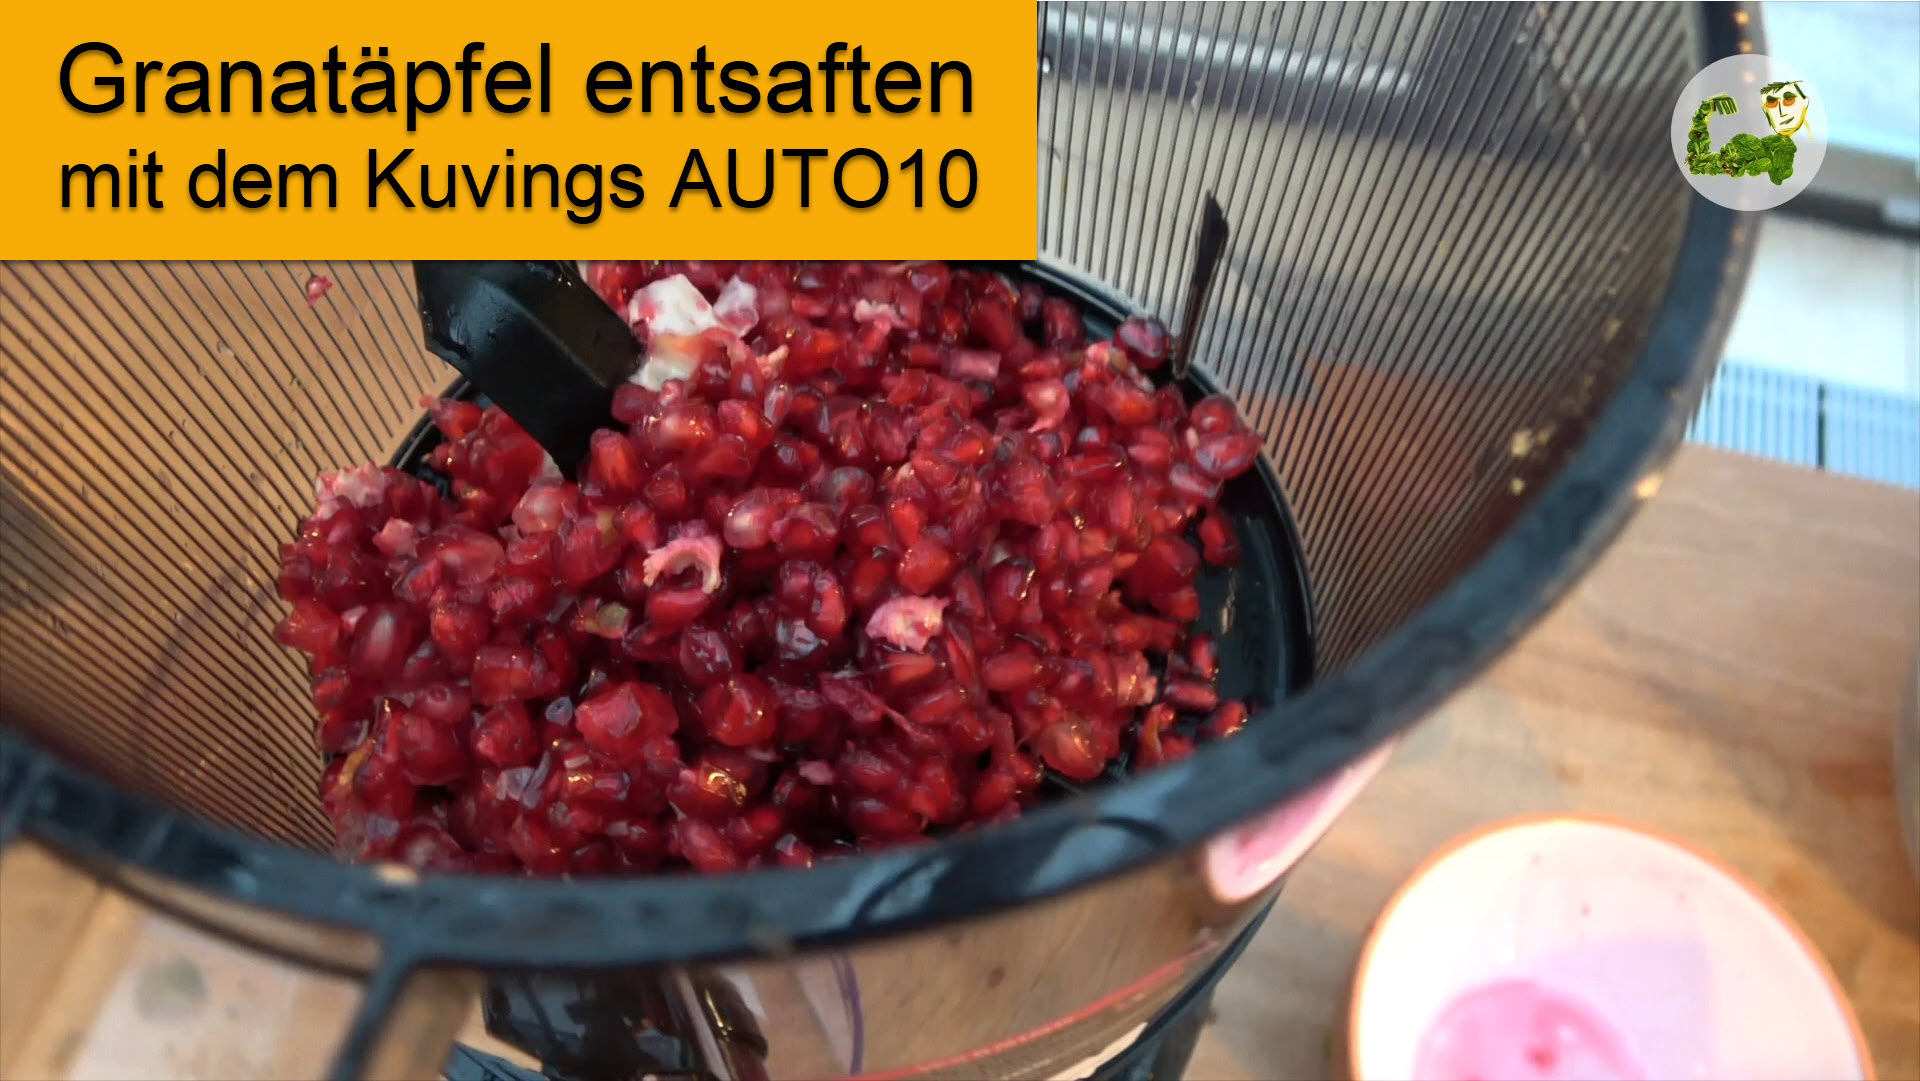 KuvingsAuto10 - Entsaften von Granatapfelkernen